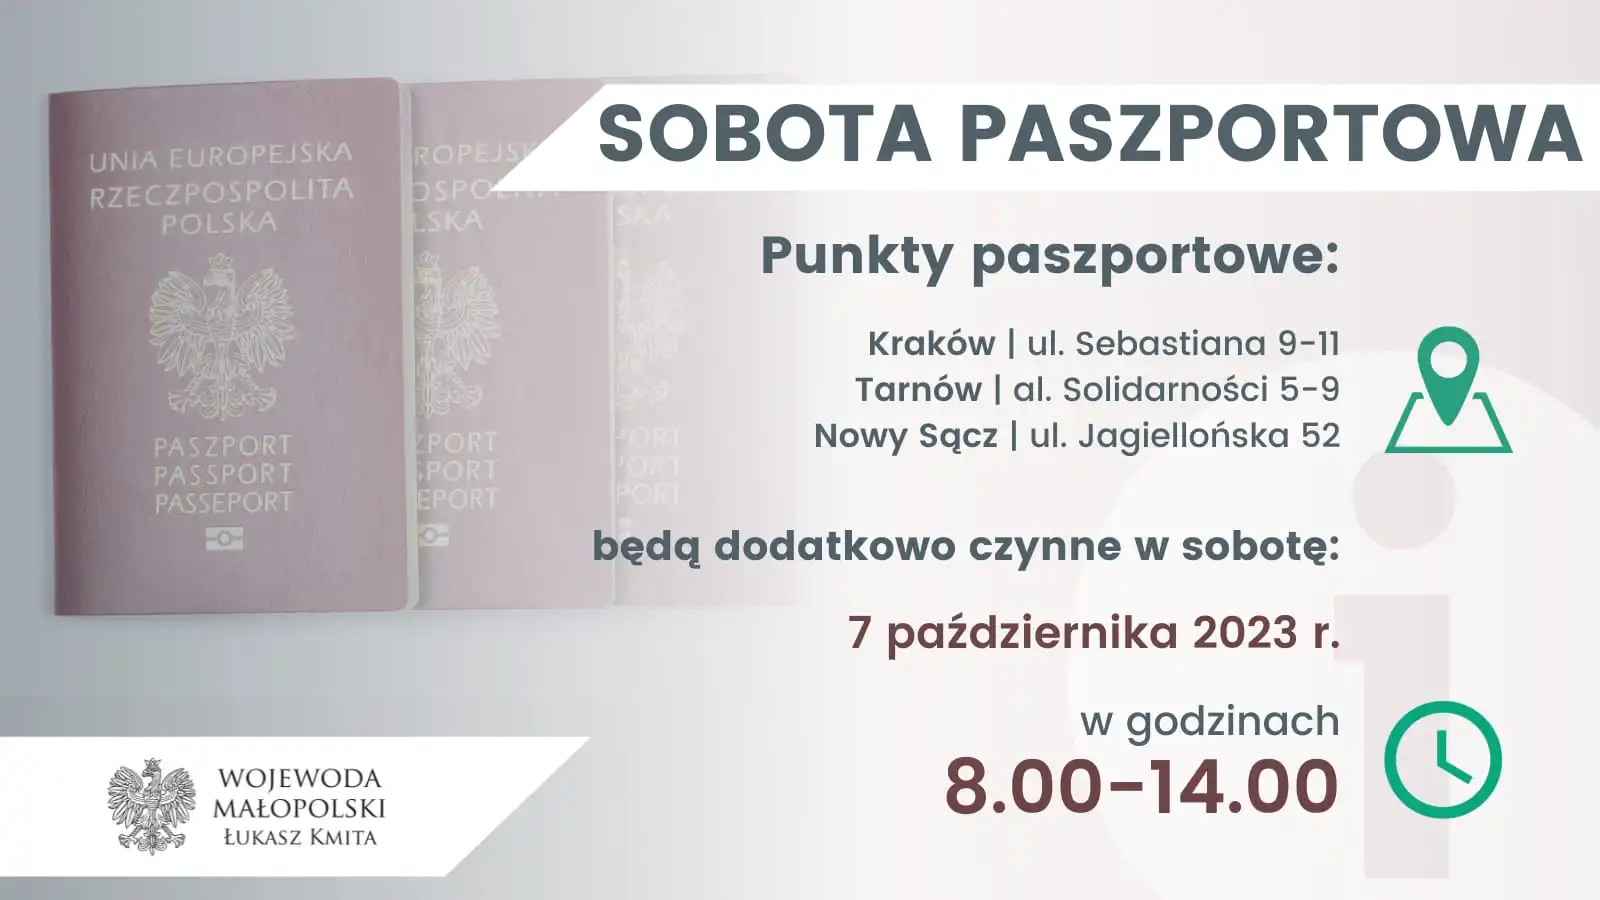 7 października kolejna „sobota paszportowa”. Wniosek będzie można złożyć lub odebrać gotowy dokument w Krakowie, Tarnowie i Nowym Sączu